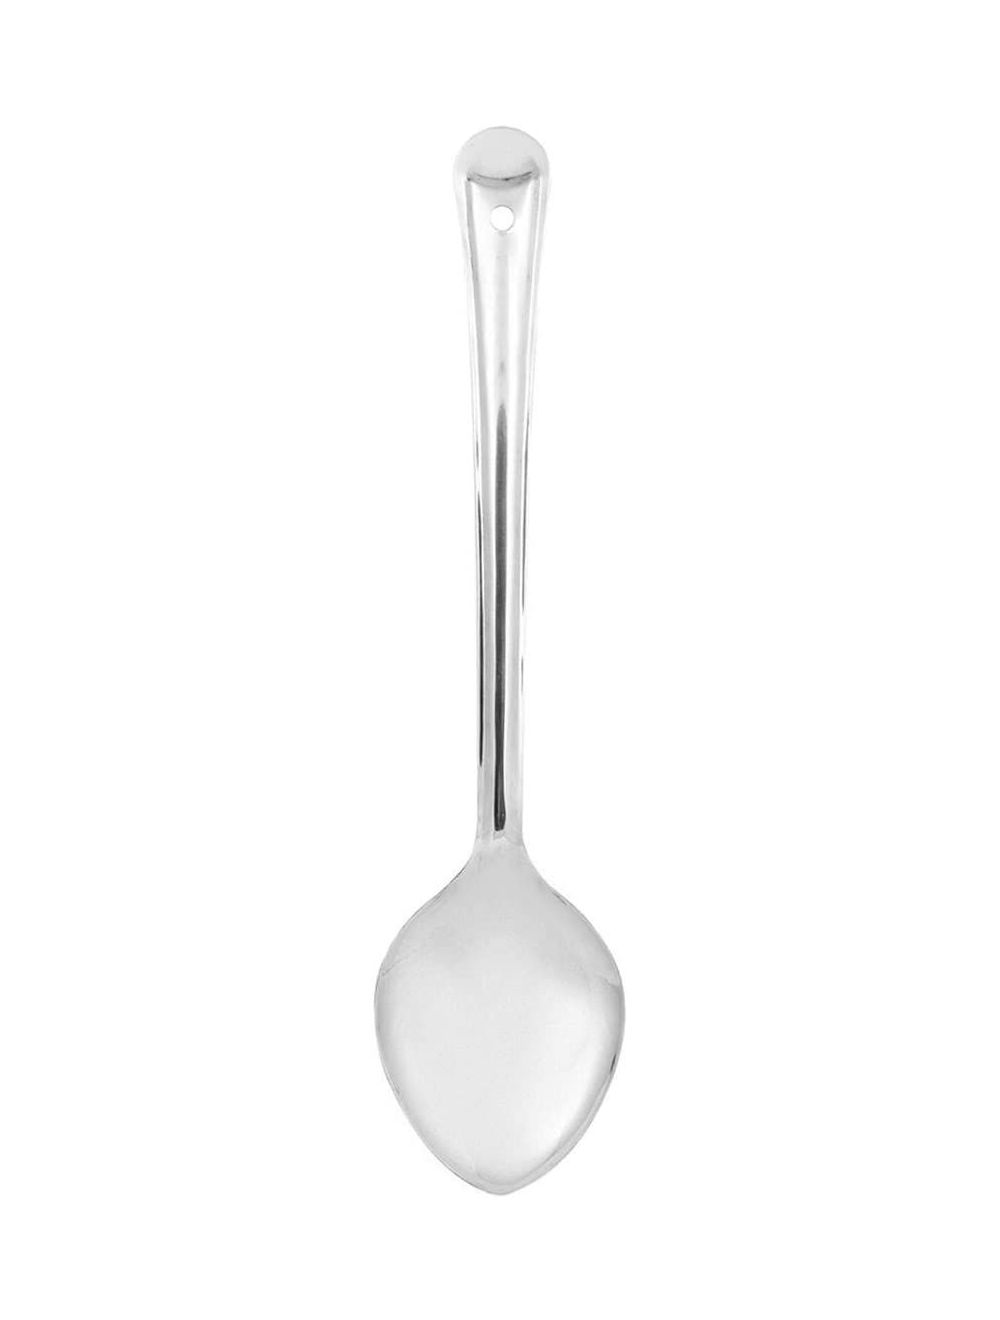 Raj 6.5 cm Basting Spoon-BS0003,Silver